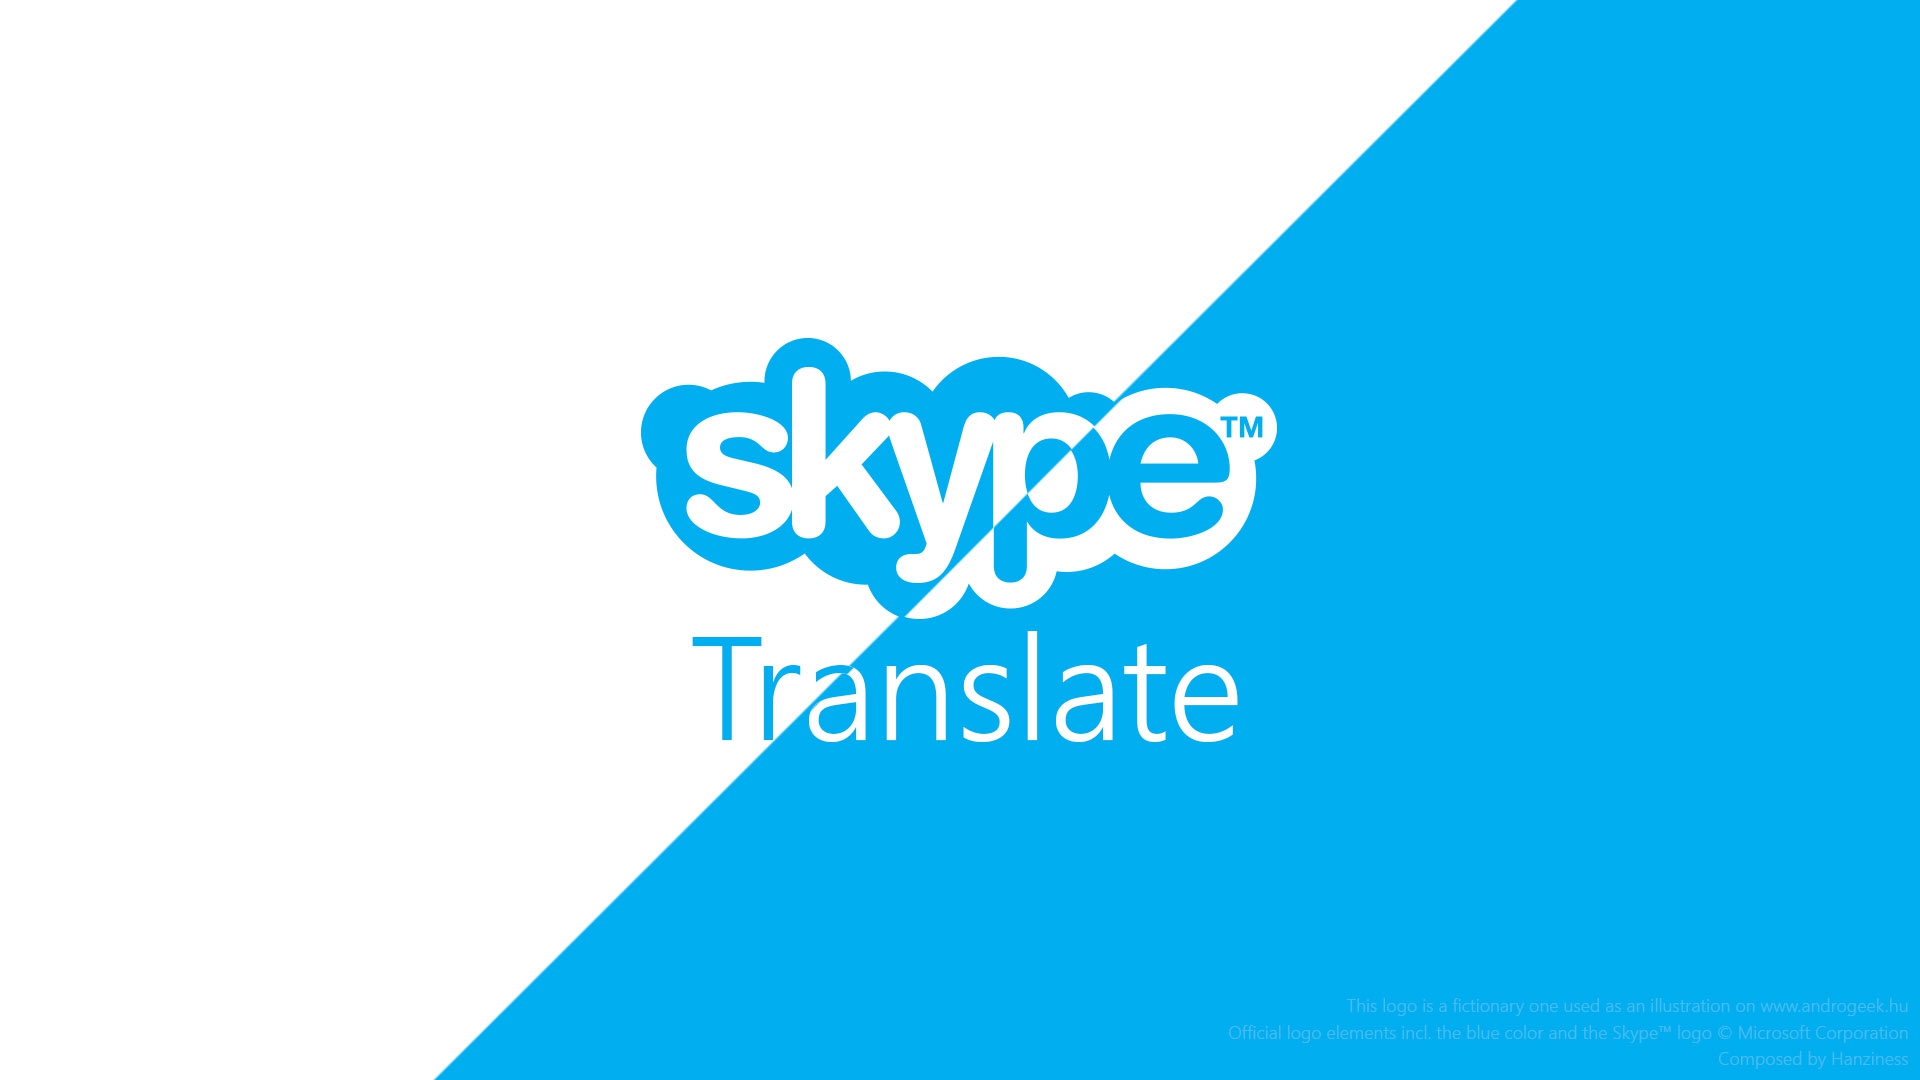 Skype запустила синхронний переклад голосових дзвінків